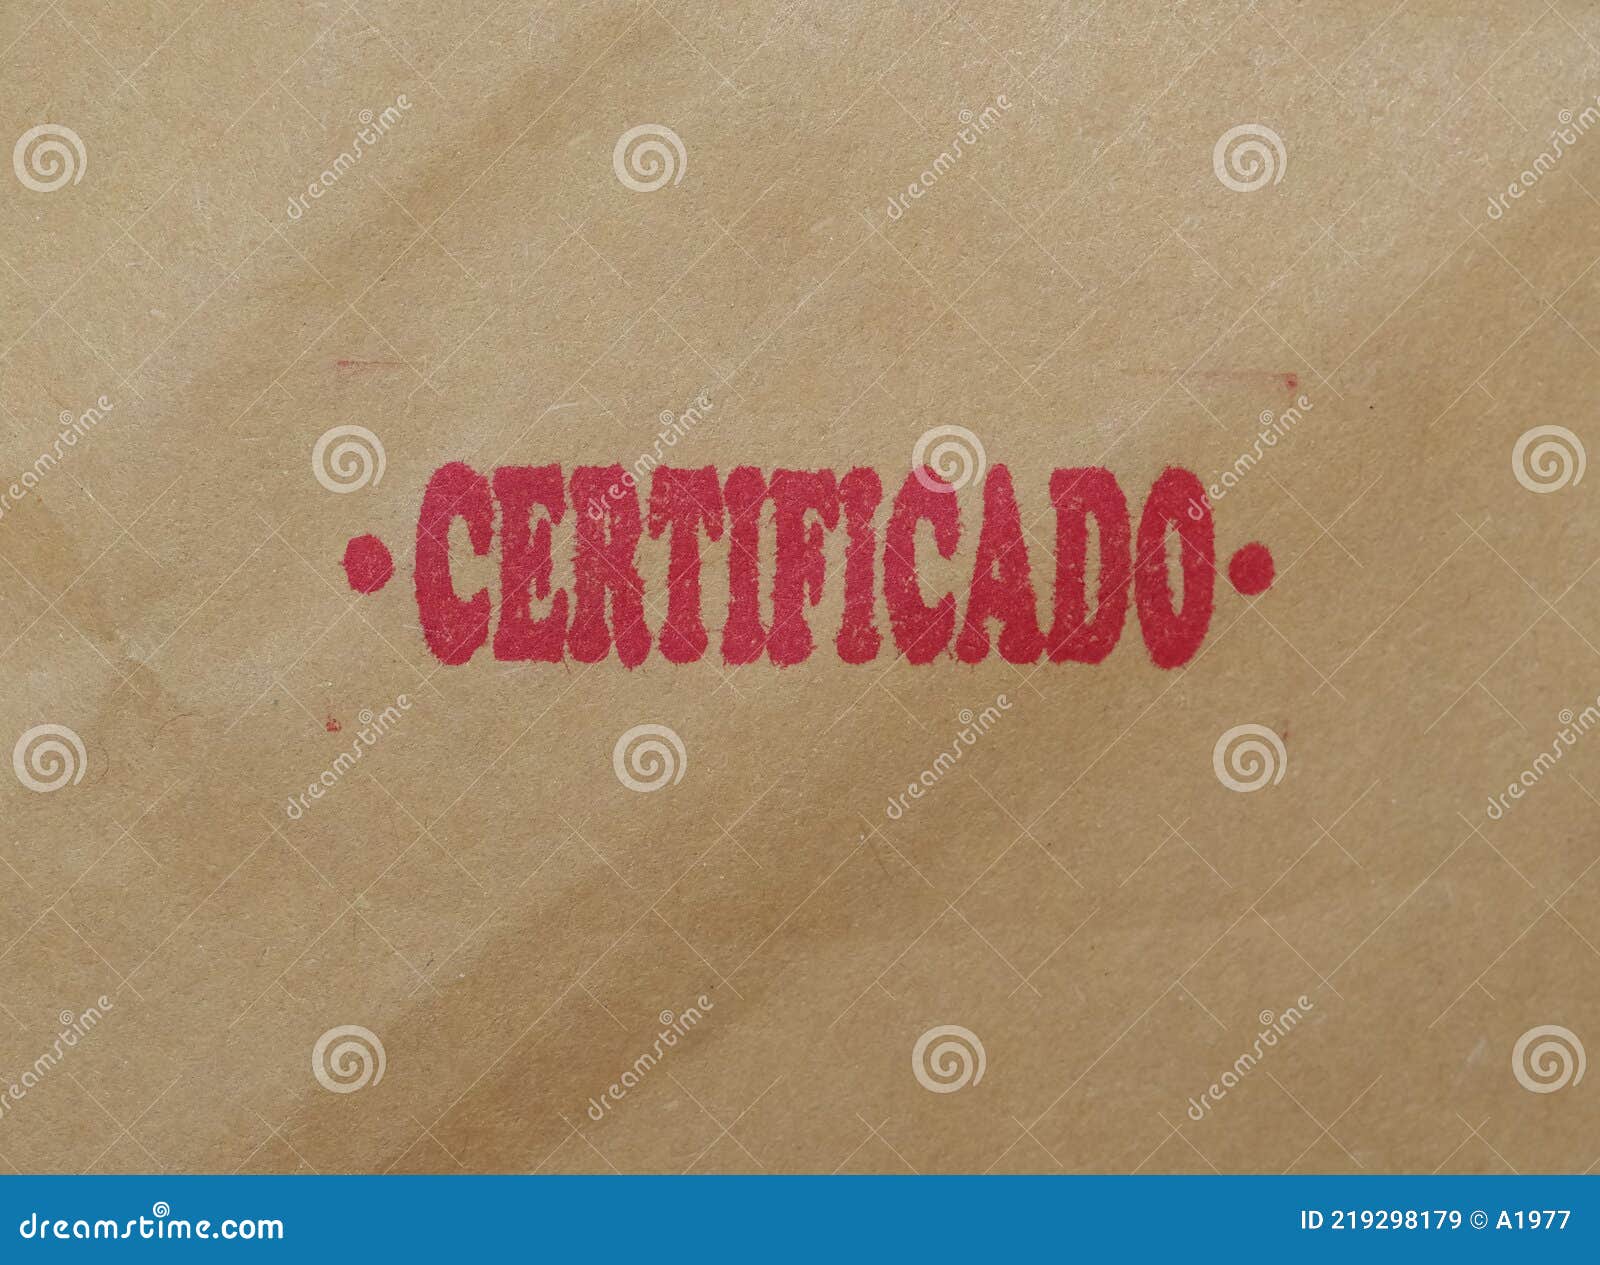 certificado translation: registered mail